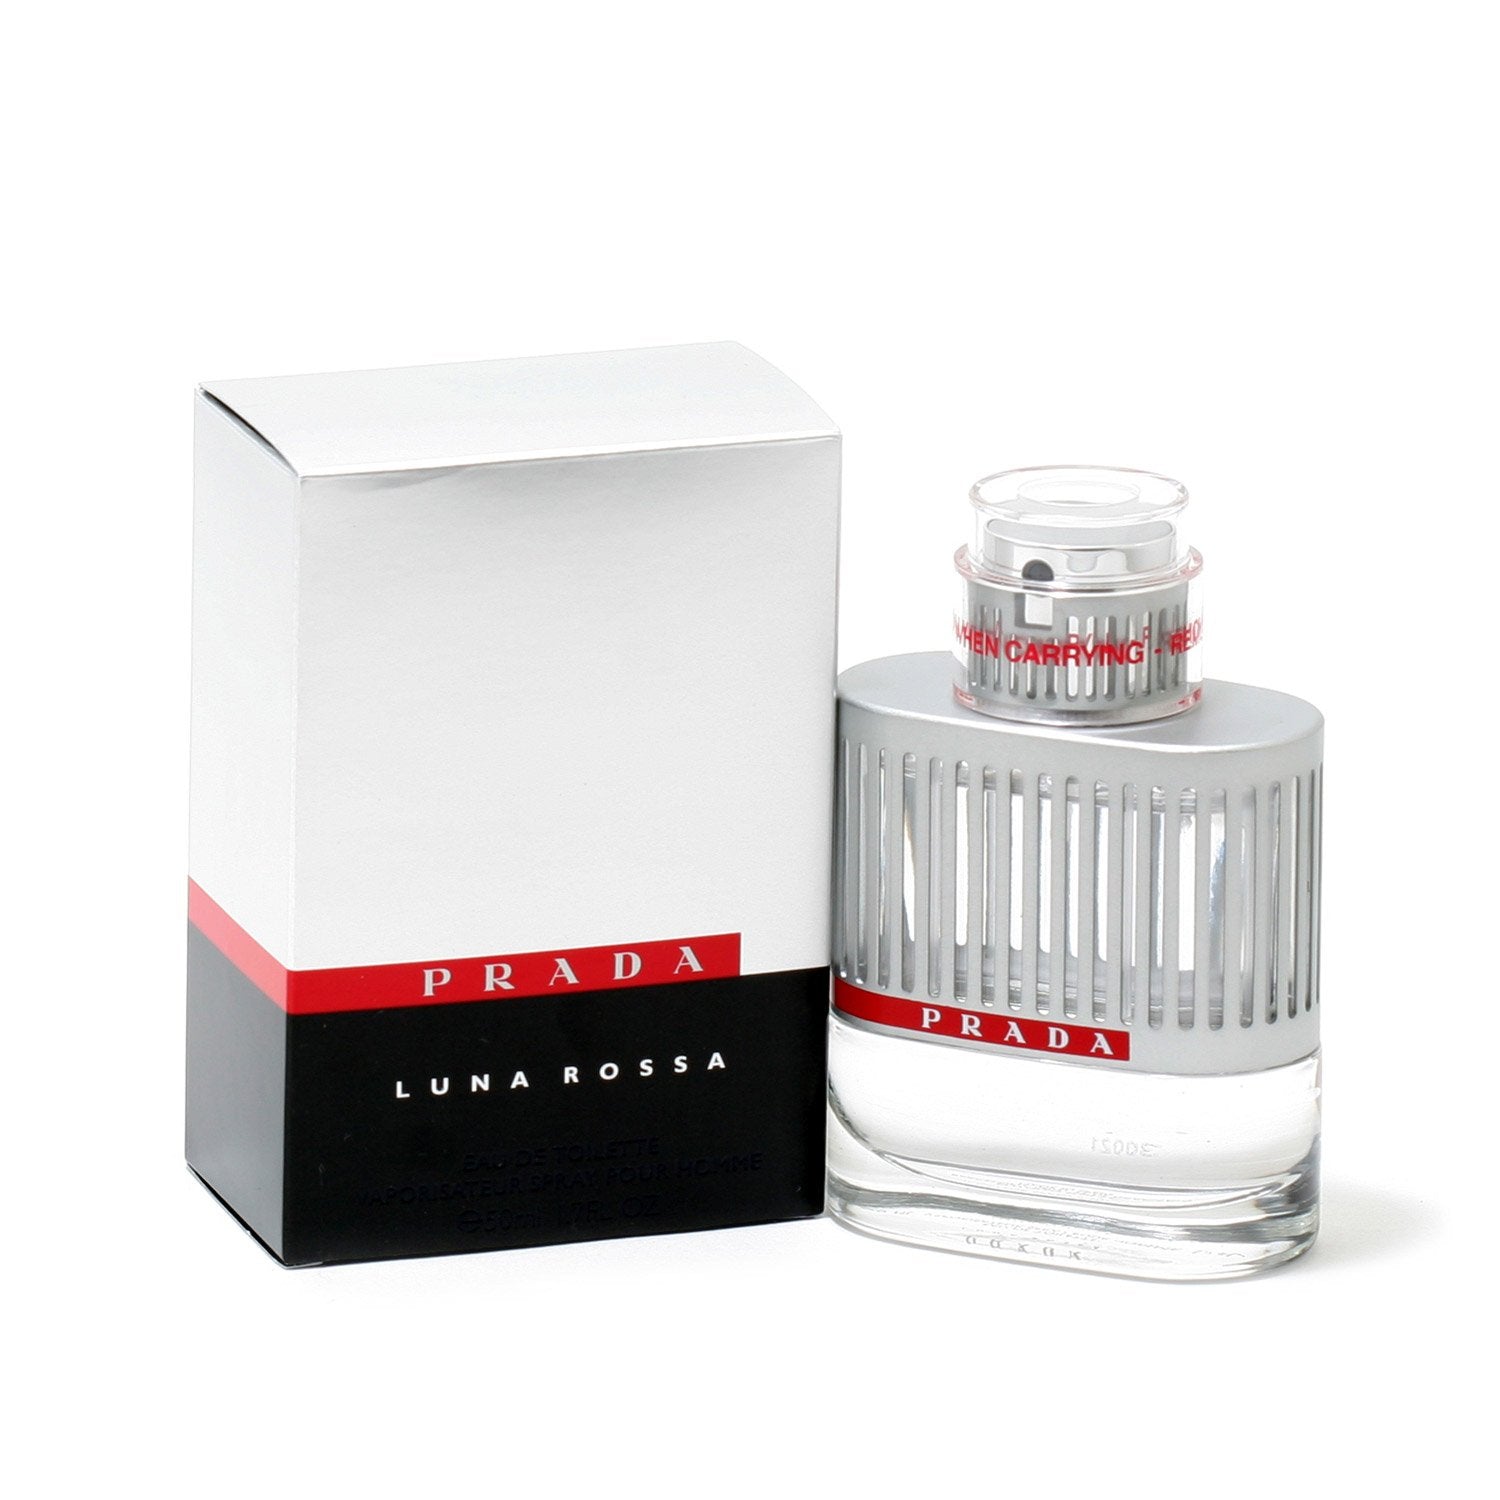 PRADA LUNA ROSSA FOR MEN - EAU DE TOILETTE SPRAY – Fragrance Room